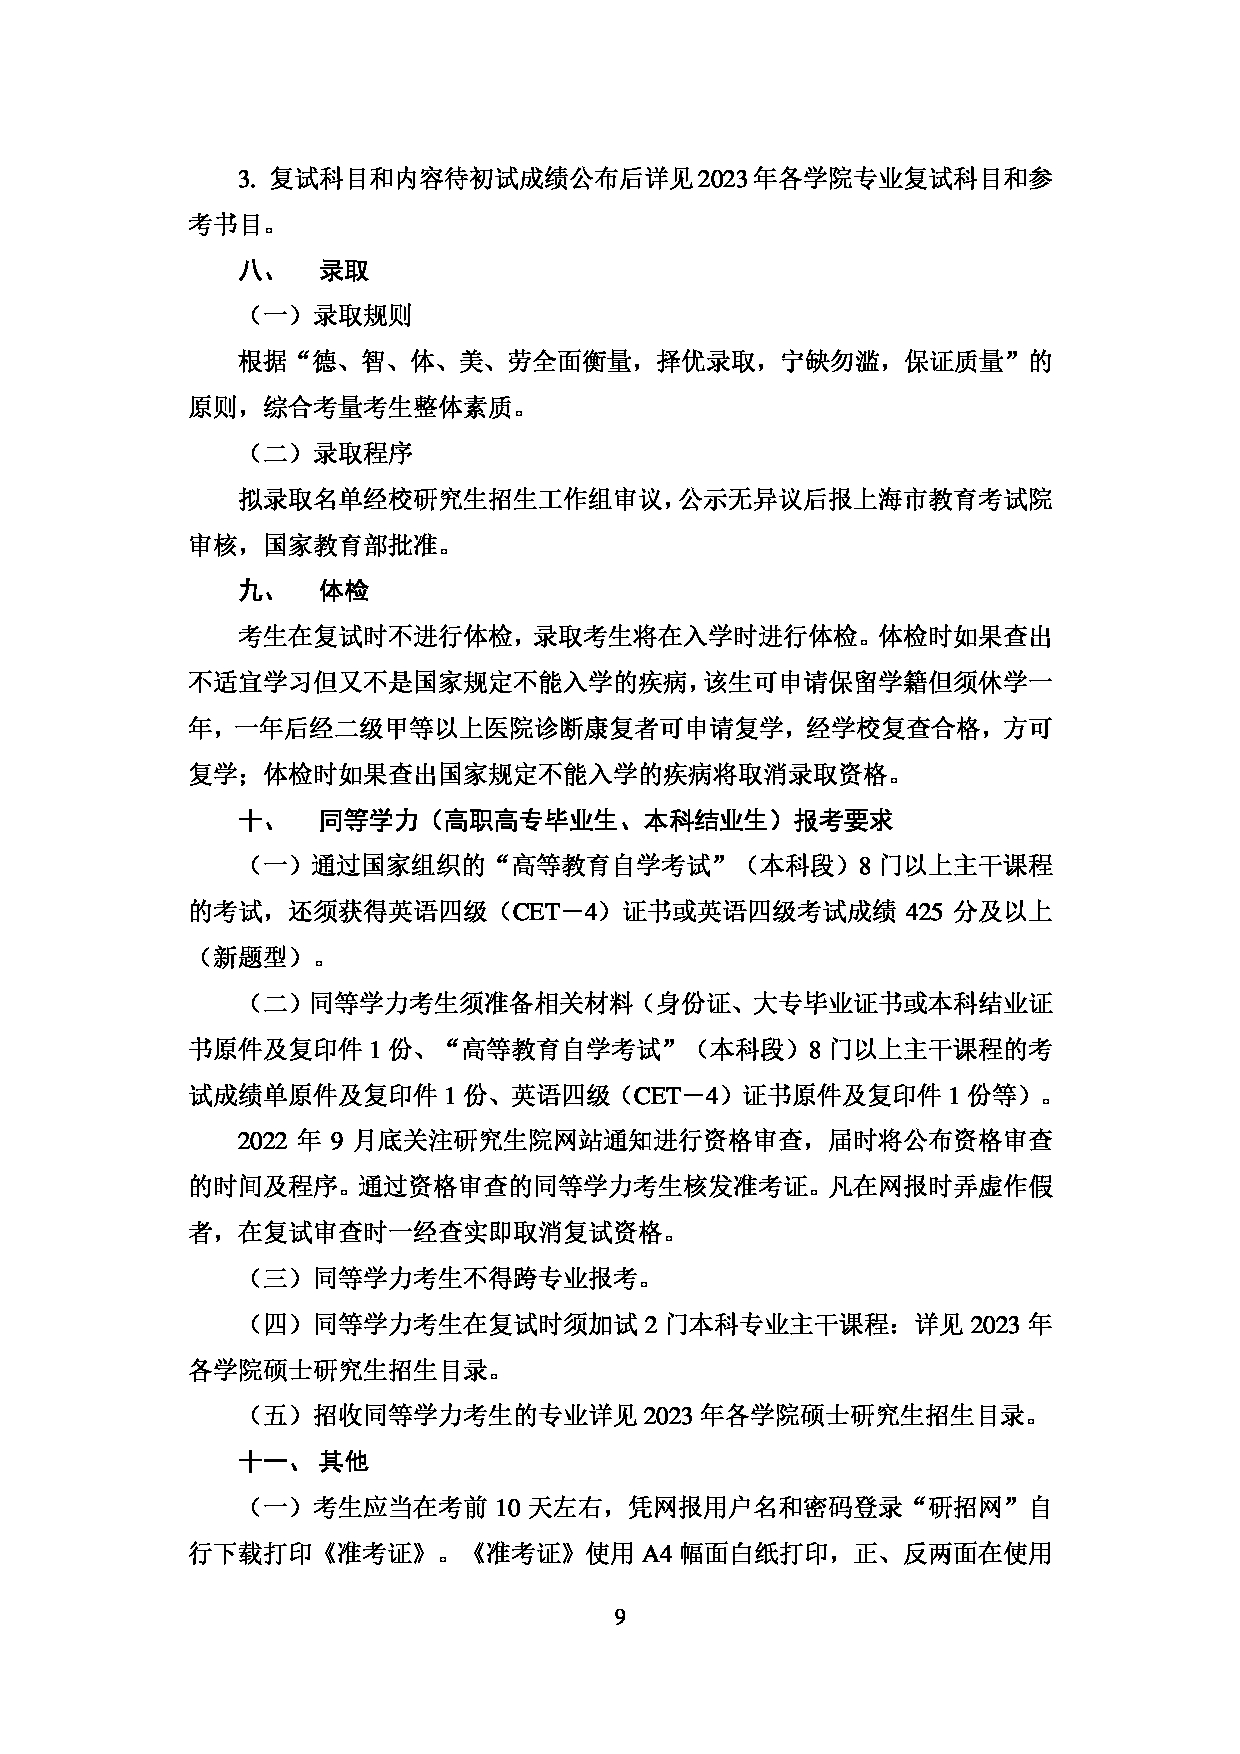 2023招生简章：上海对外经贸大学2023年招收攻读硕士学位研究生简章第11页